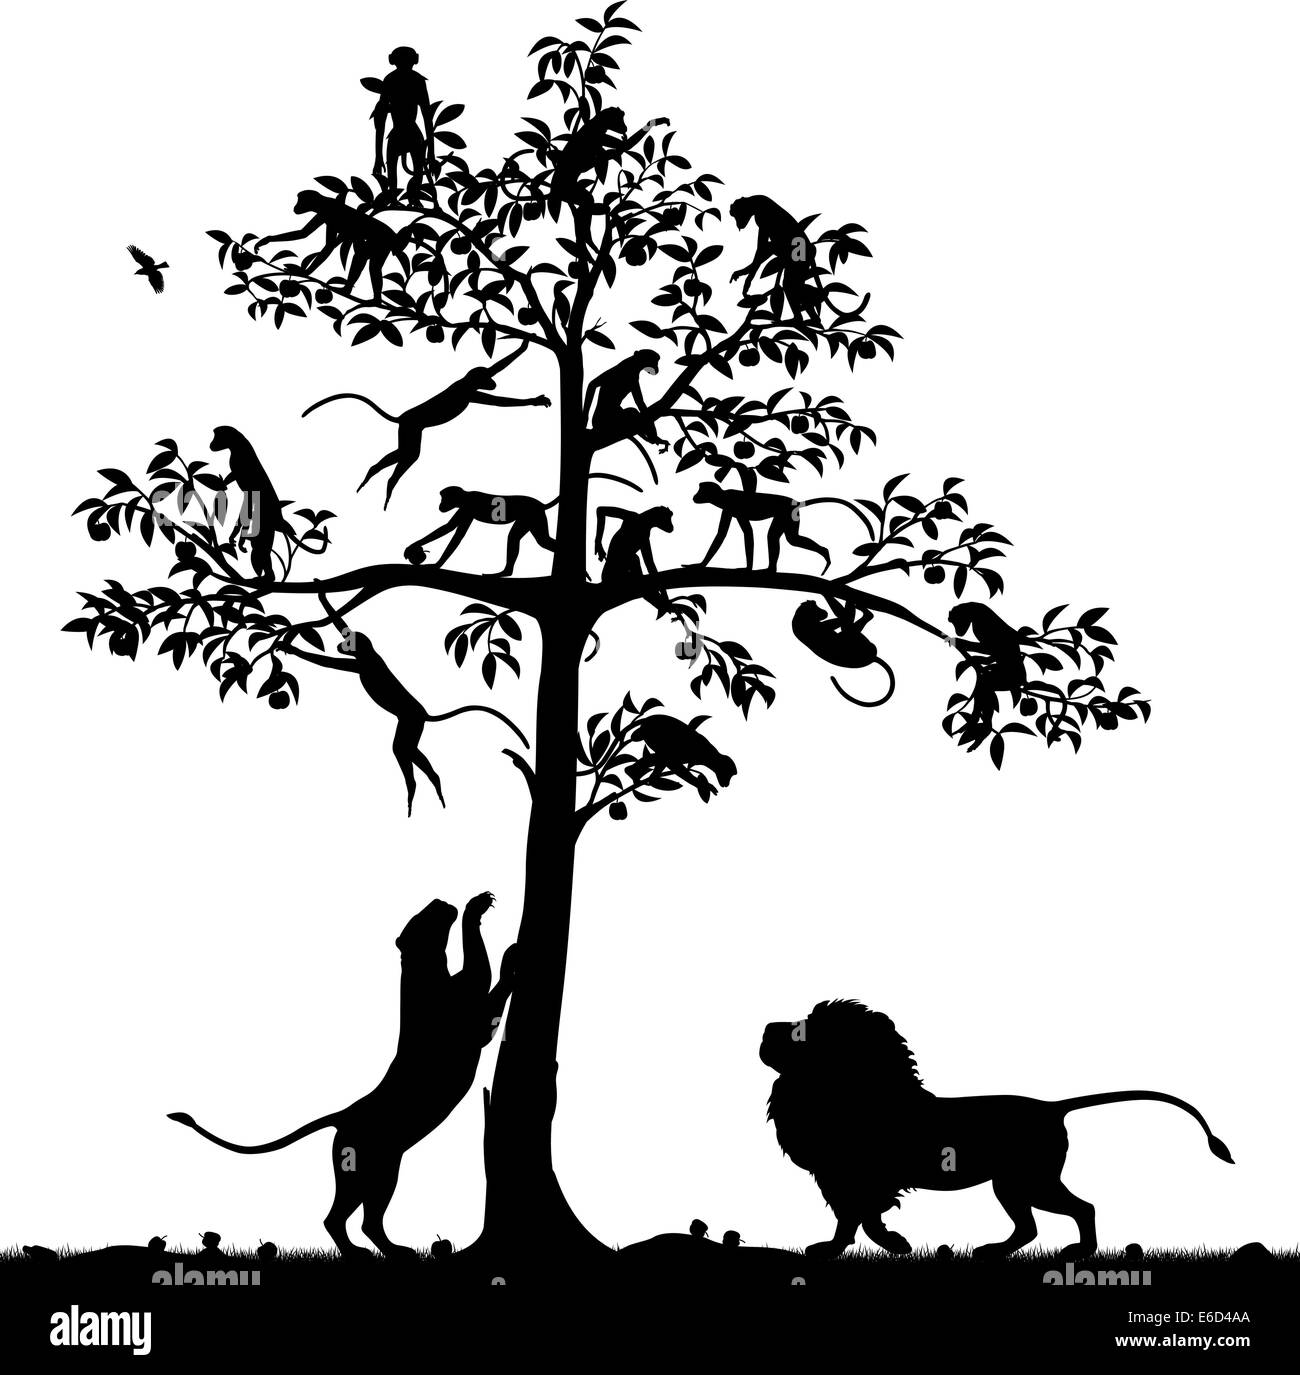 Vettore modificabile silhouette di scimmie in una struttura ad albero e una coppia di leoni in seguito con tutti i dati come oggetti separati Illustrazione Vettoriale